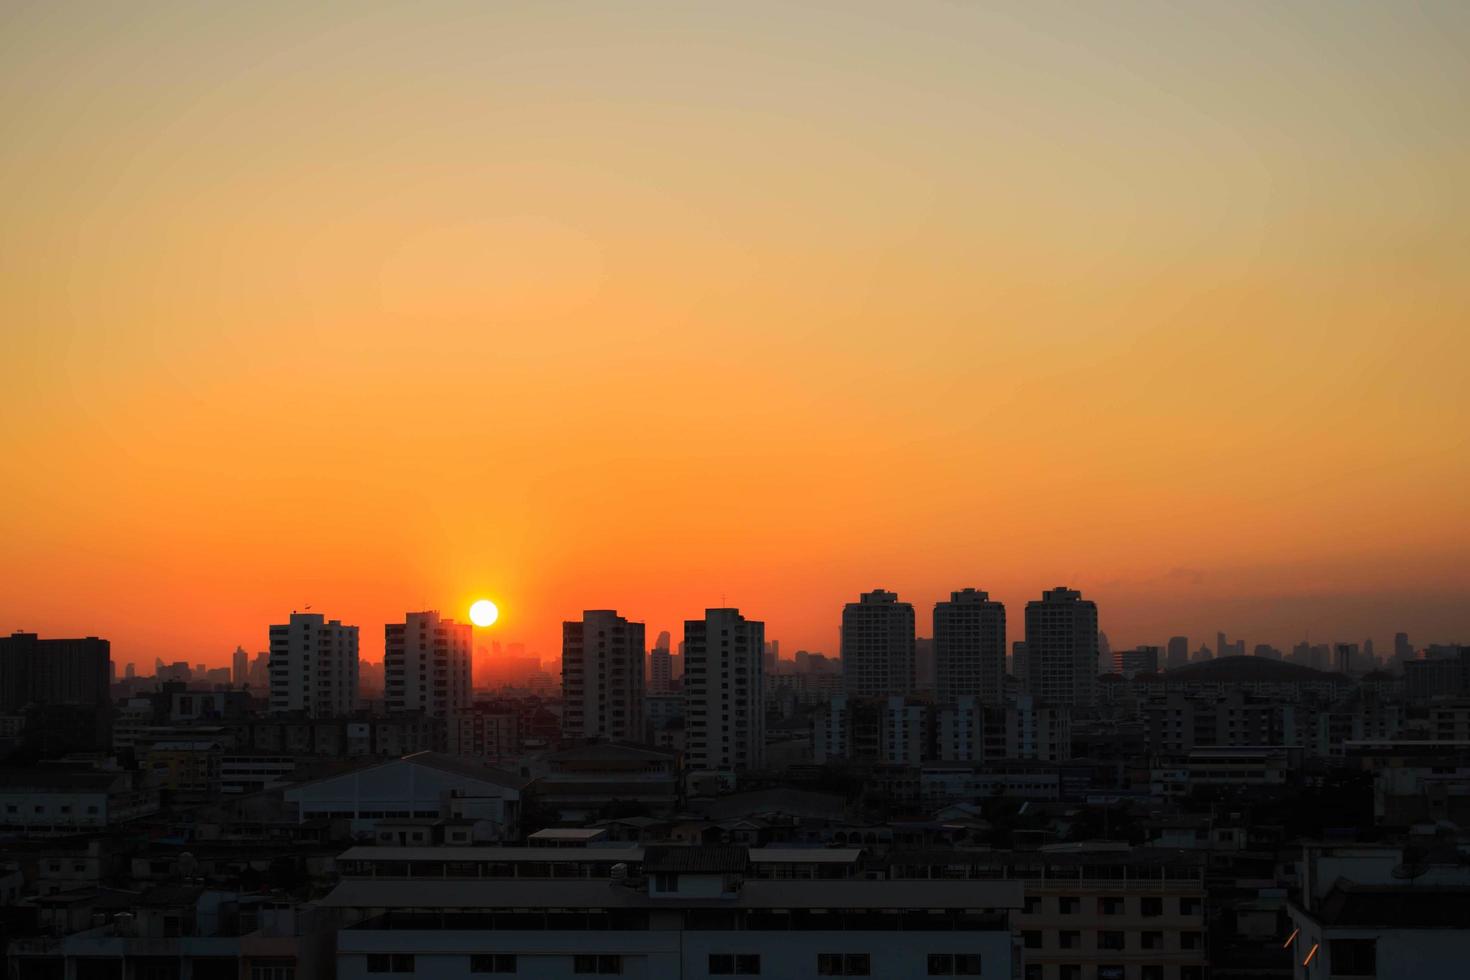 coucher de soleil dans la ville photo